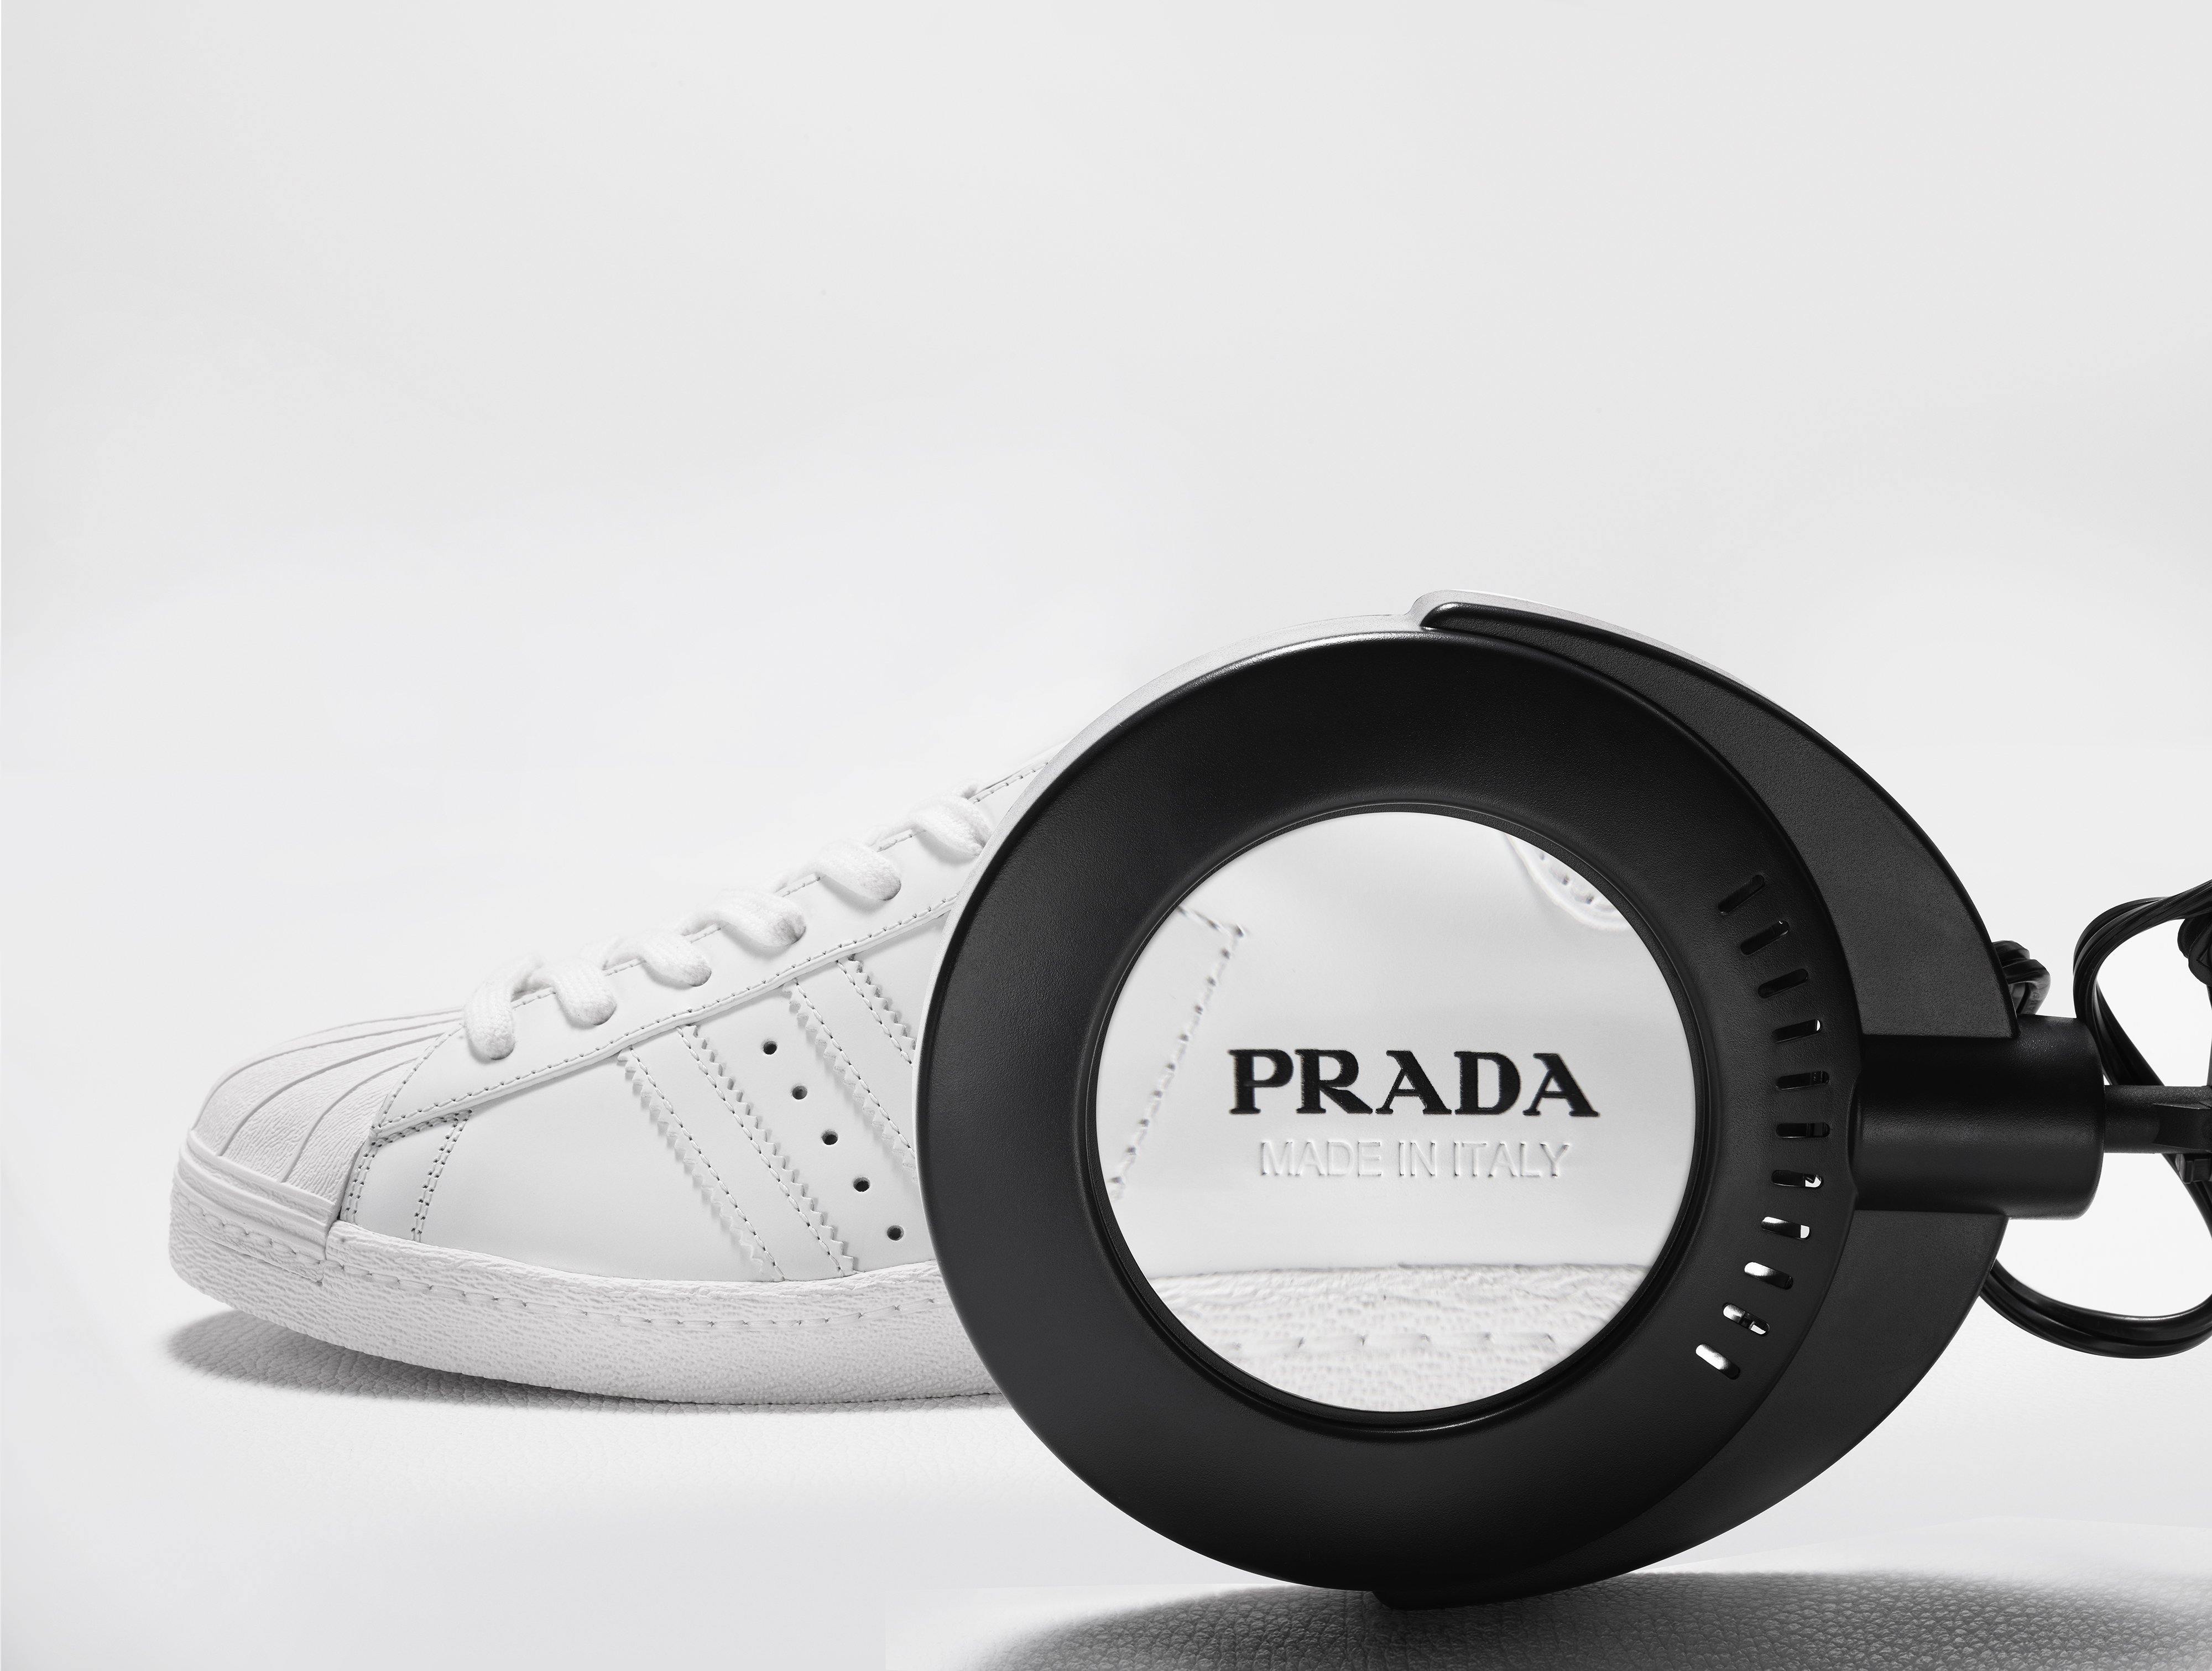 Prada for Adidas limited edition è la collaborazione sodalizio tra due brand rinomati.L'edizione limitata nasce come tributo alle iconiche sneaker Superstar